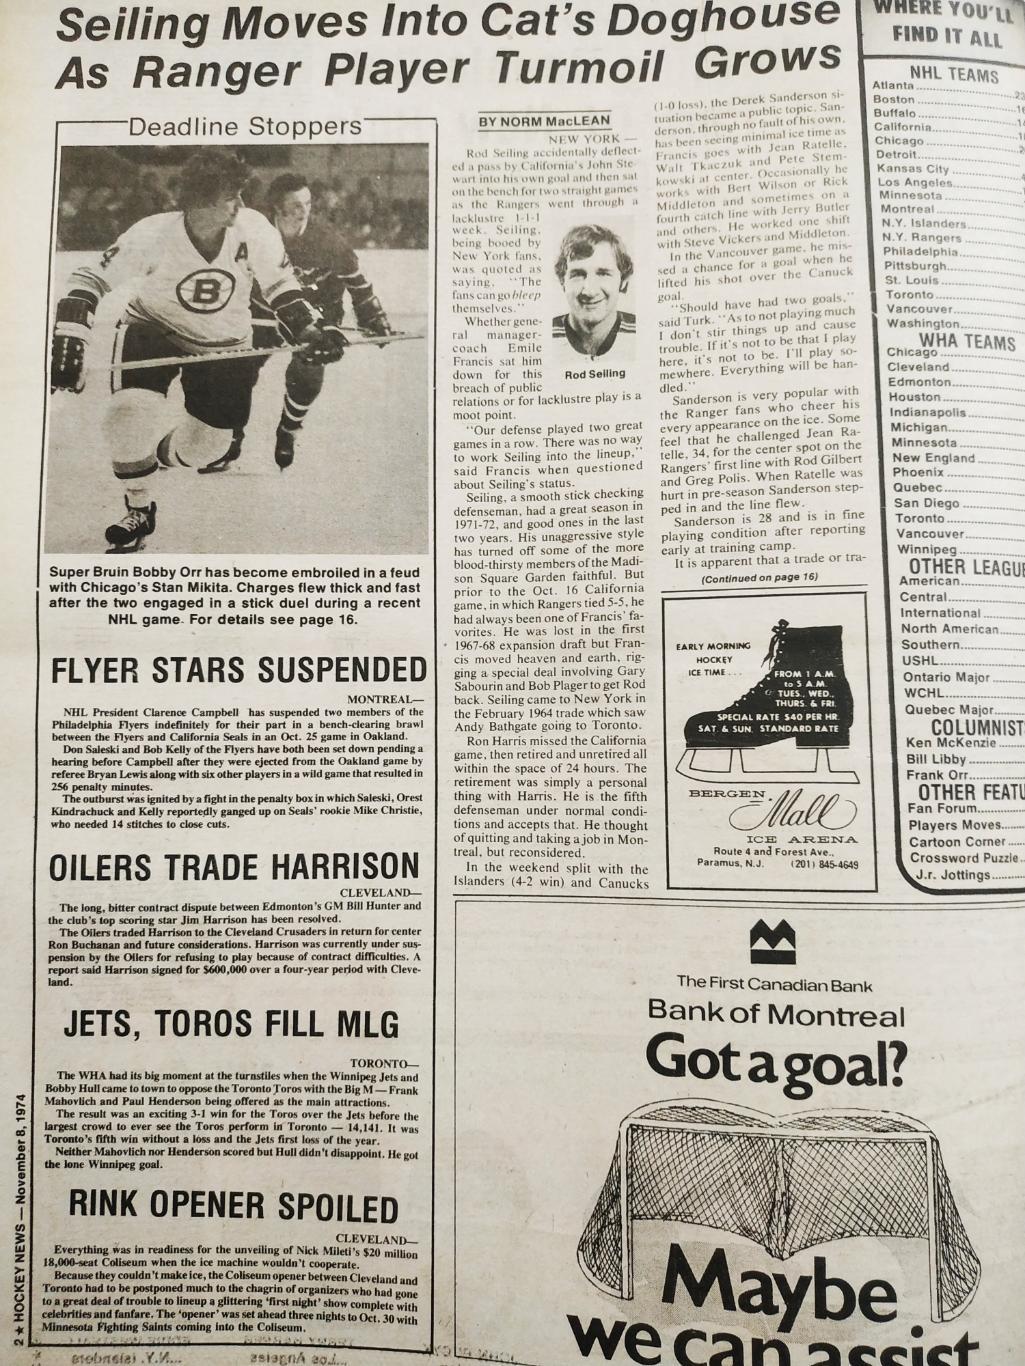 ХОККЕЙ ЖУРНАЛ ЕЖЕНЕДЕЛЬНИК НХЛ НОВОСТИ ХОККЕЯ NOV.8 1974 NHL THE HOCKEY NEWS 1